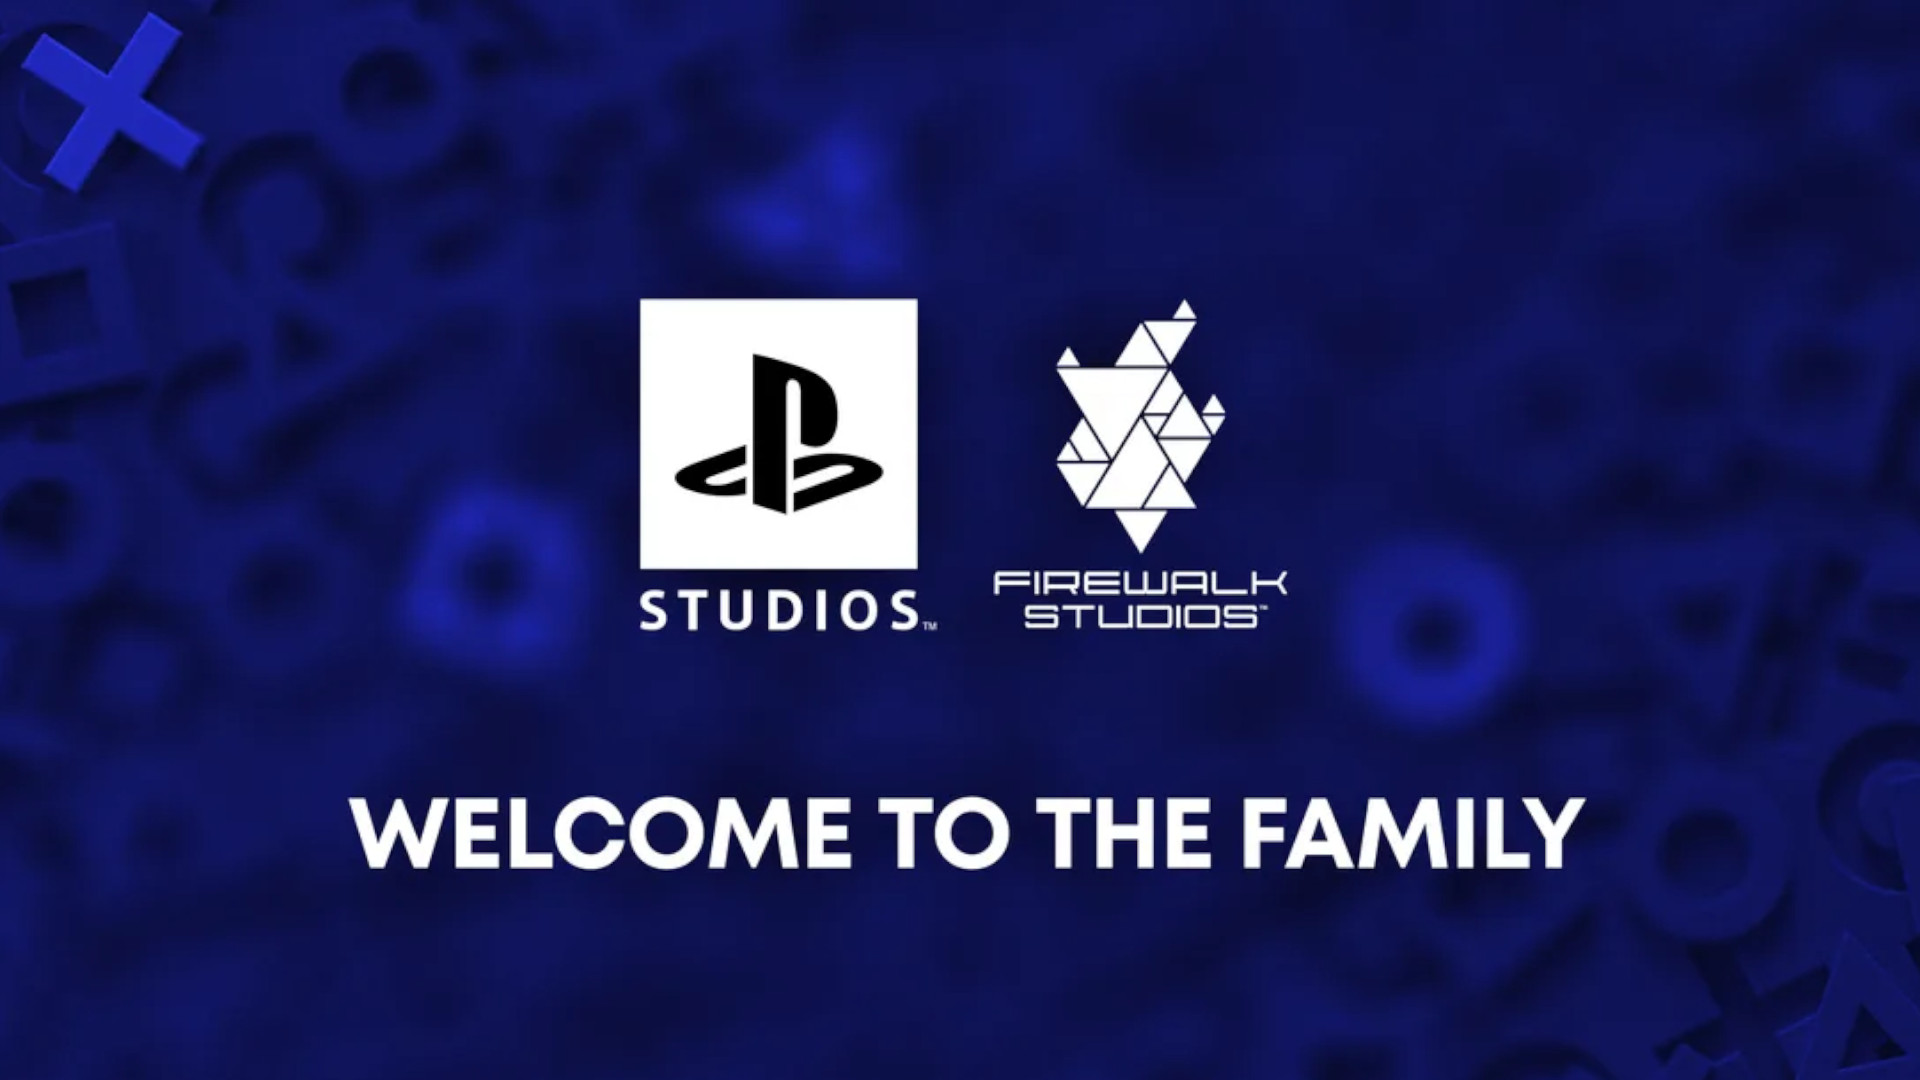 Logos PlayStation Studios et Firewalk Studios